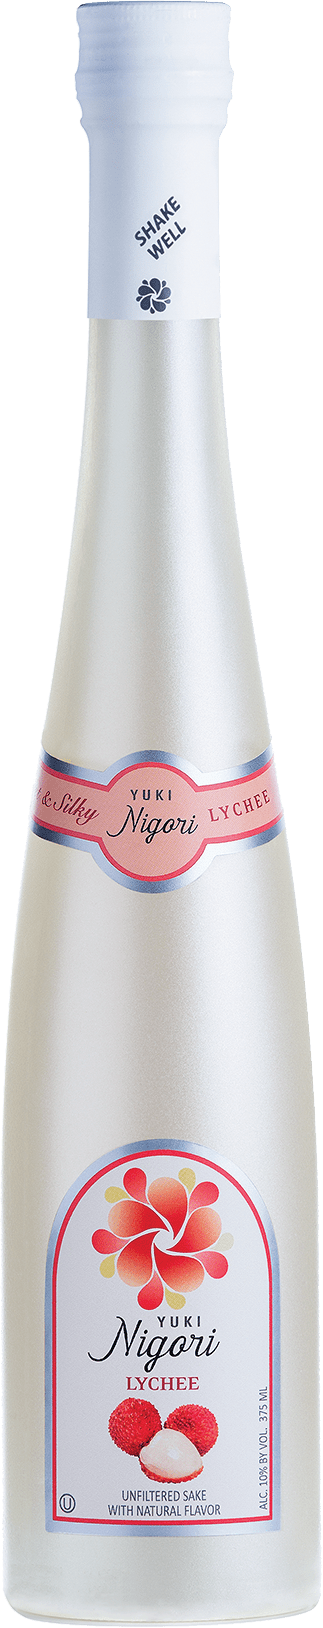 Wine Yuki Junmai Nigori Lychee 375ml